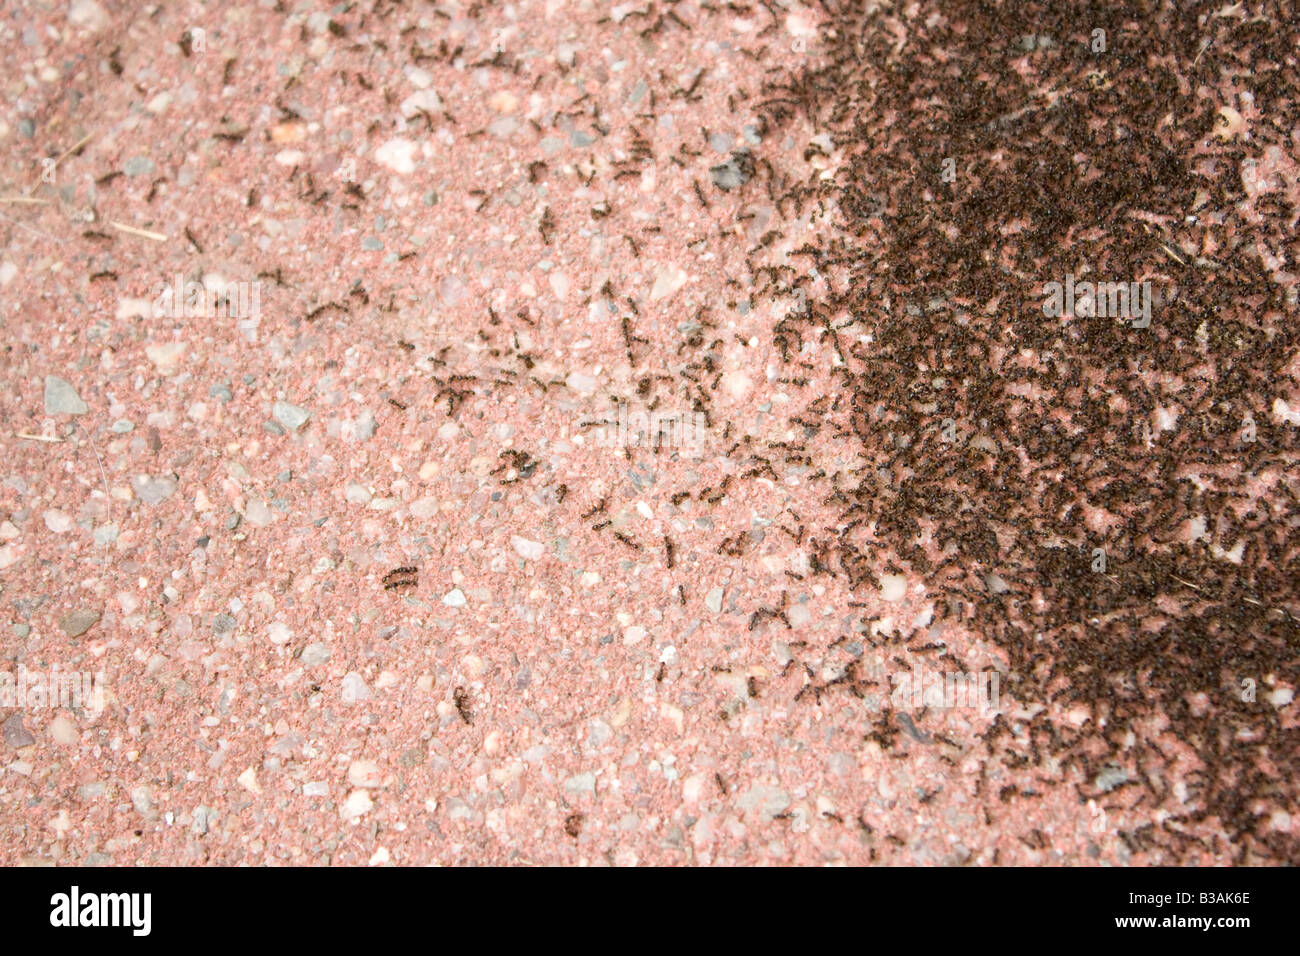 Une colonie de minuscules fourmis attaque une zone de la patio il ressemble à des grains de café Banque D'Images